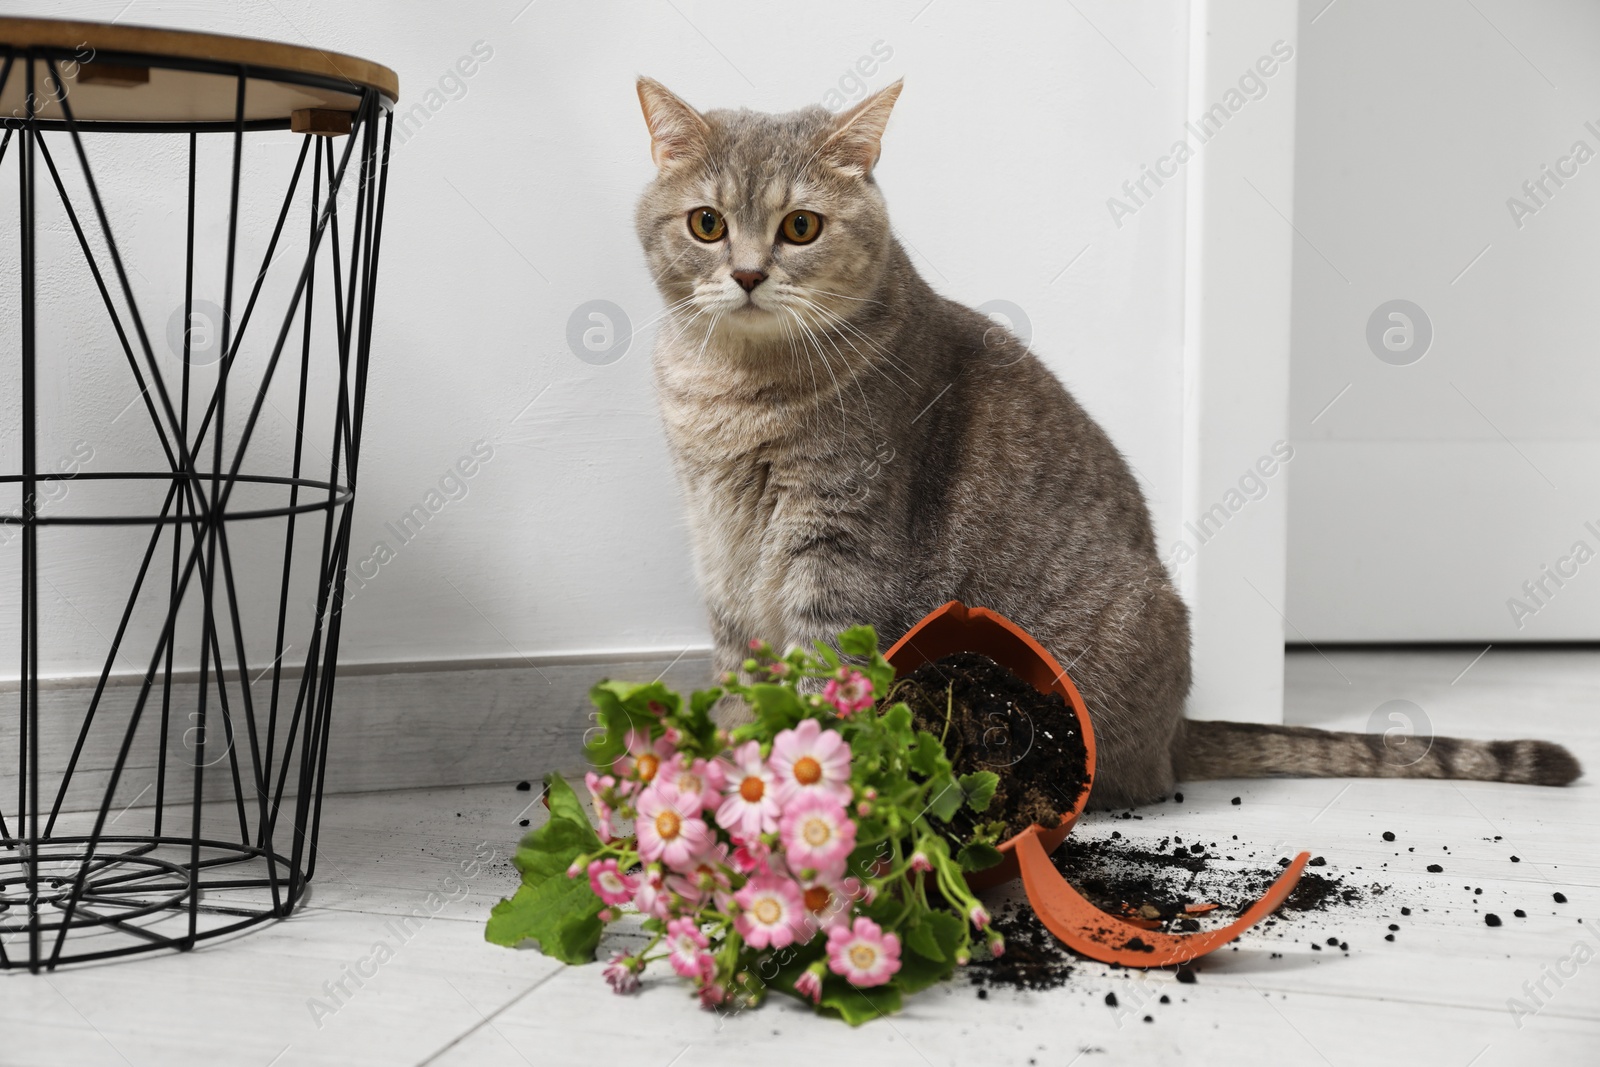 Photo of Cute cat, broken flower pot with cineraria plant on floor indoors